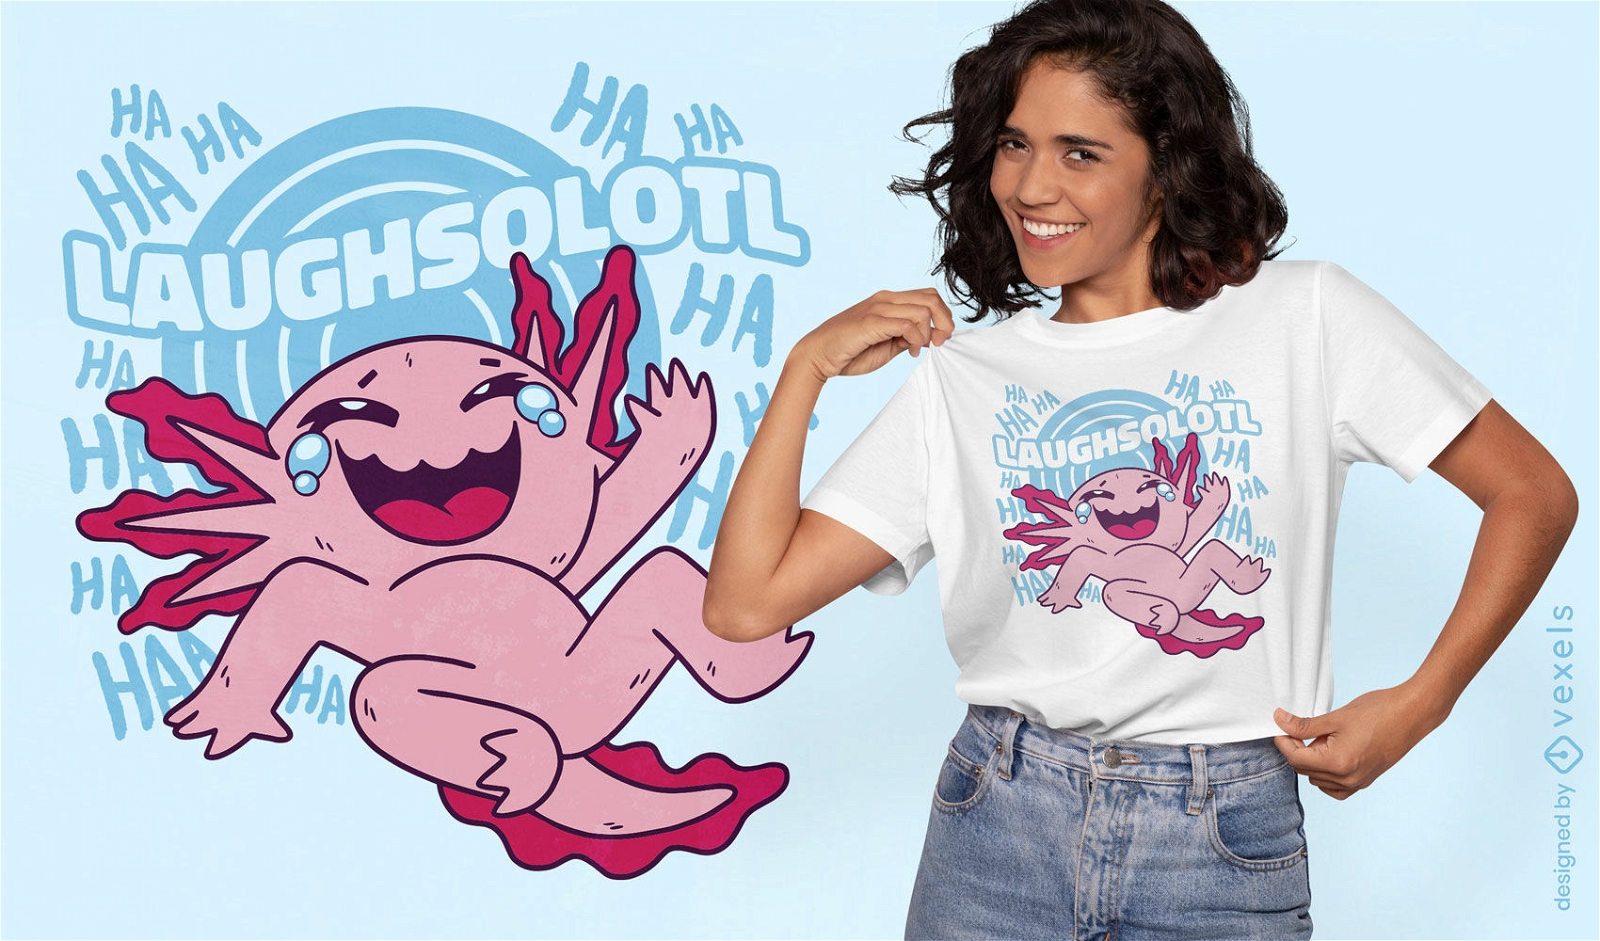 Laughsolotl lustiger Axolotl-T - Shirtentwurf